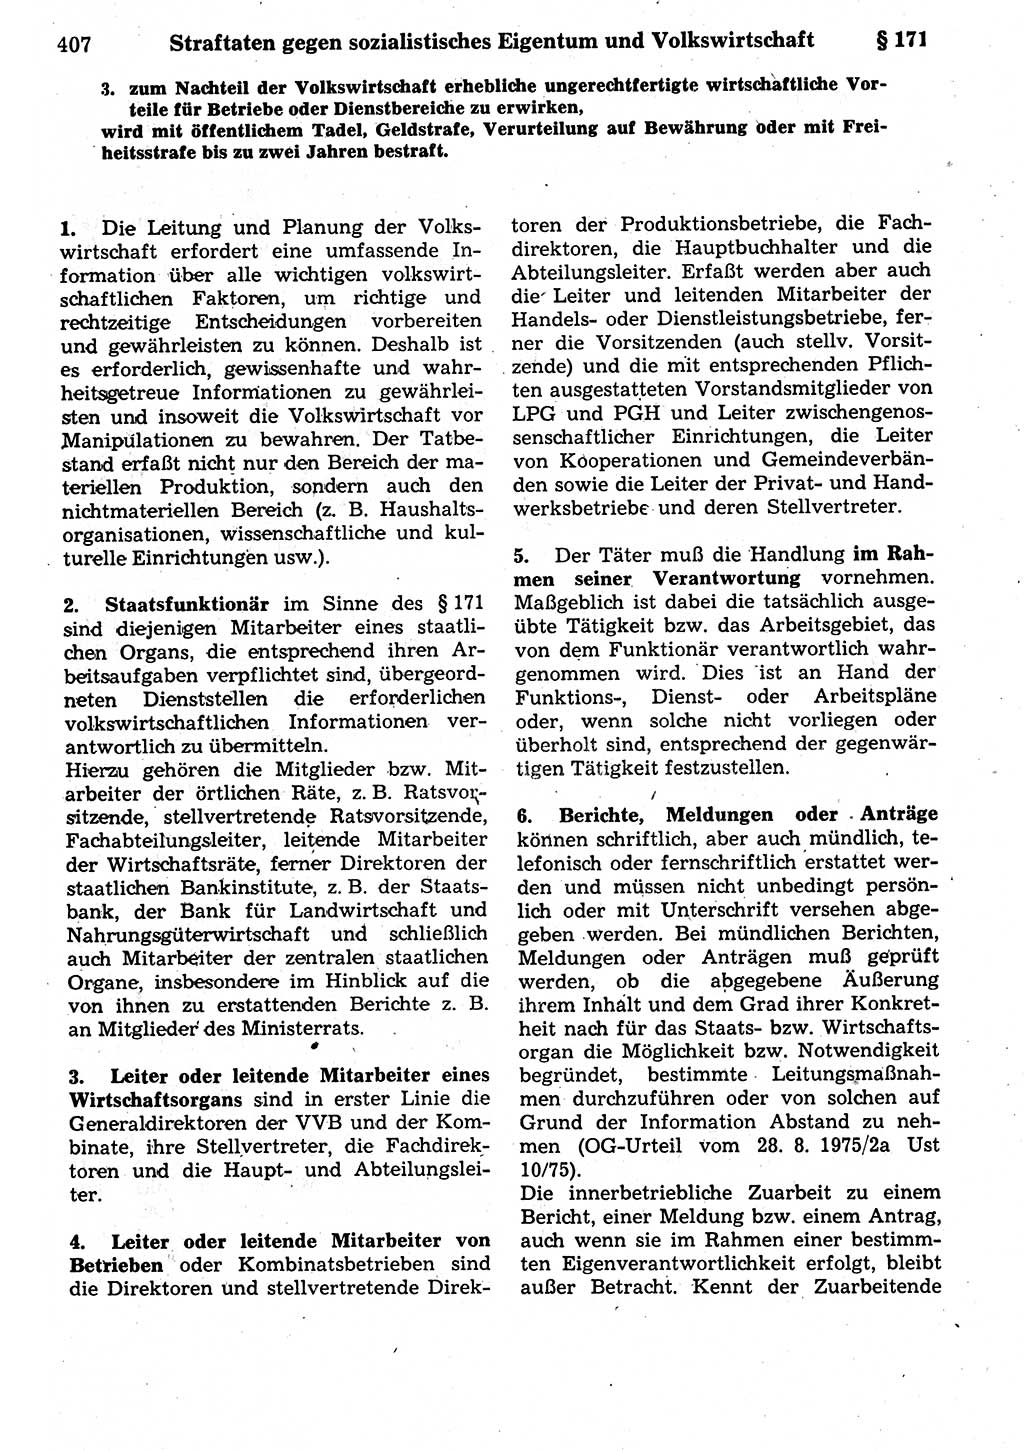 Strafrecht der Deutschen Demokratischen Republik (DDR), Kommentar zum Strafgesetzbuch (StGB) 1987, Seite 407 (Strafr. DDR Komm. StGB 1987, S. 407)